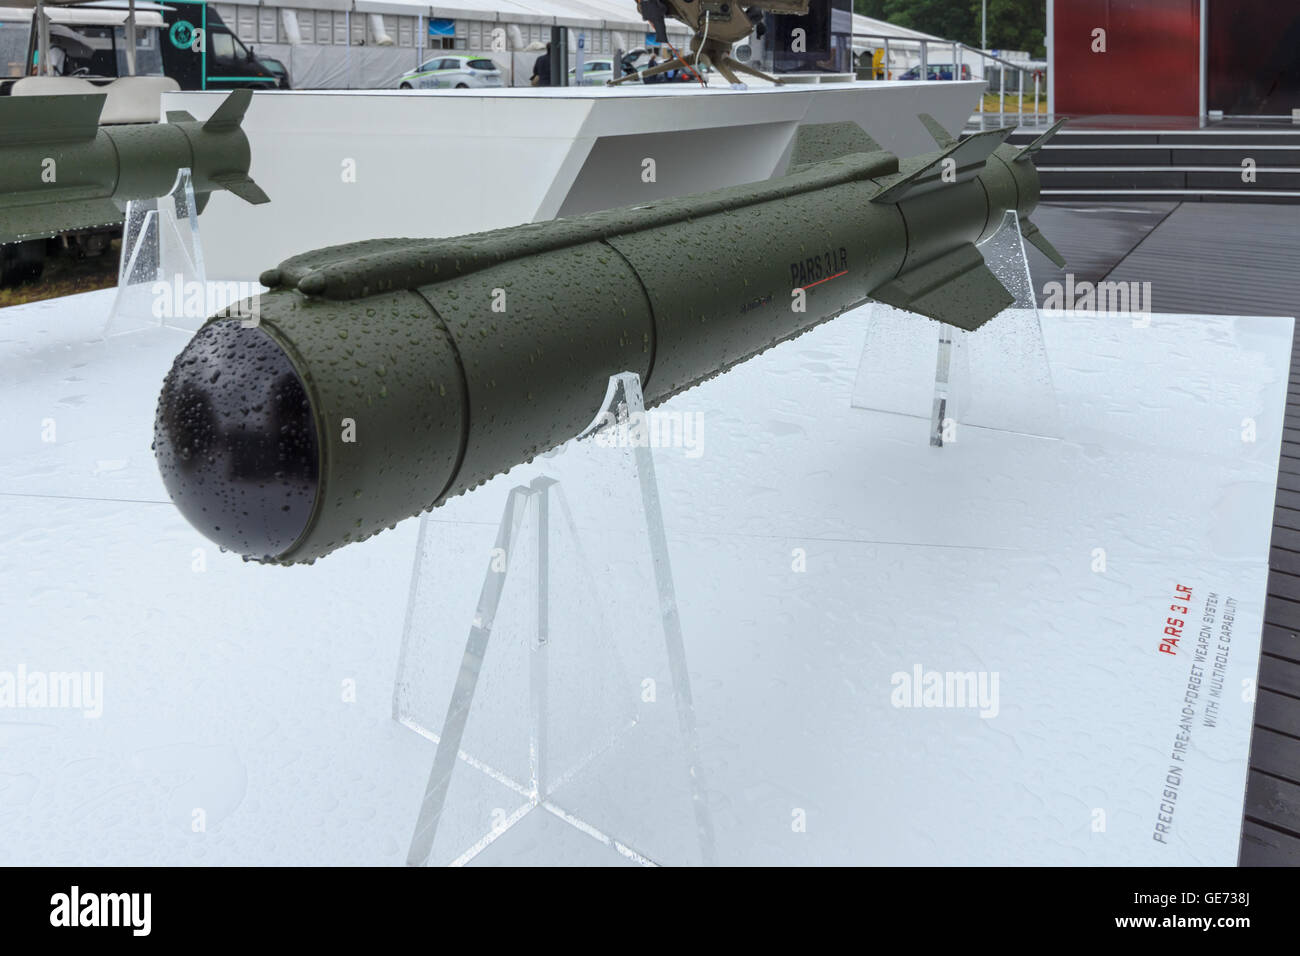 BERLIN, Deutschland - 1. Juni 2016: Anti-Tank Flugkörper PARS 3 LR, ist eine Fire-and-forget-Rakete. Ausstellung ILA Berlin Airshow 2016. Stockfoto